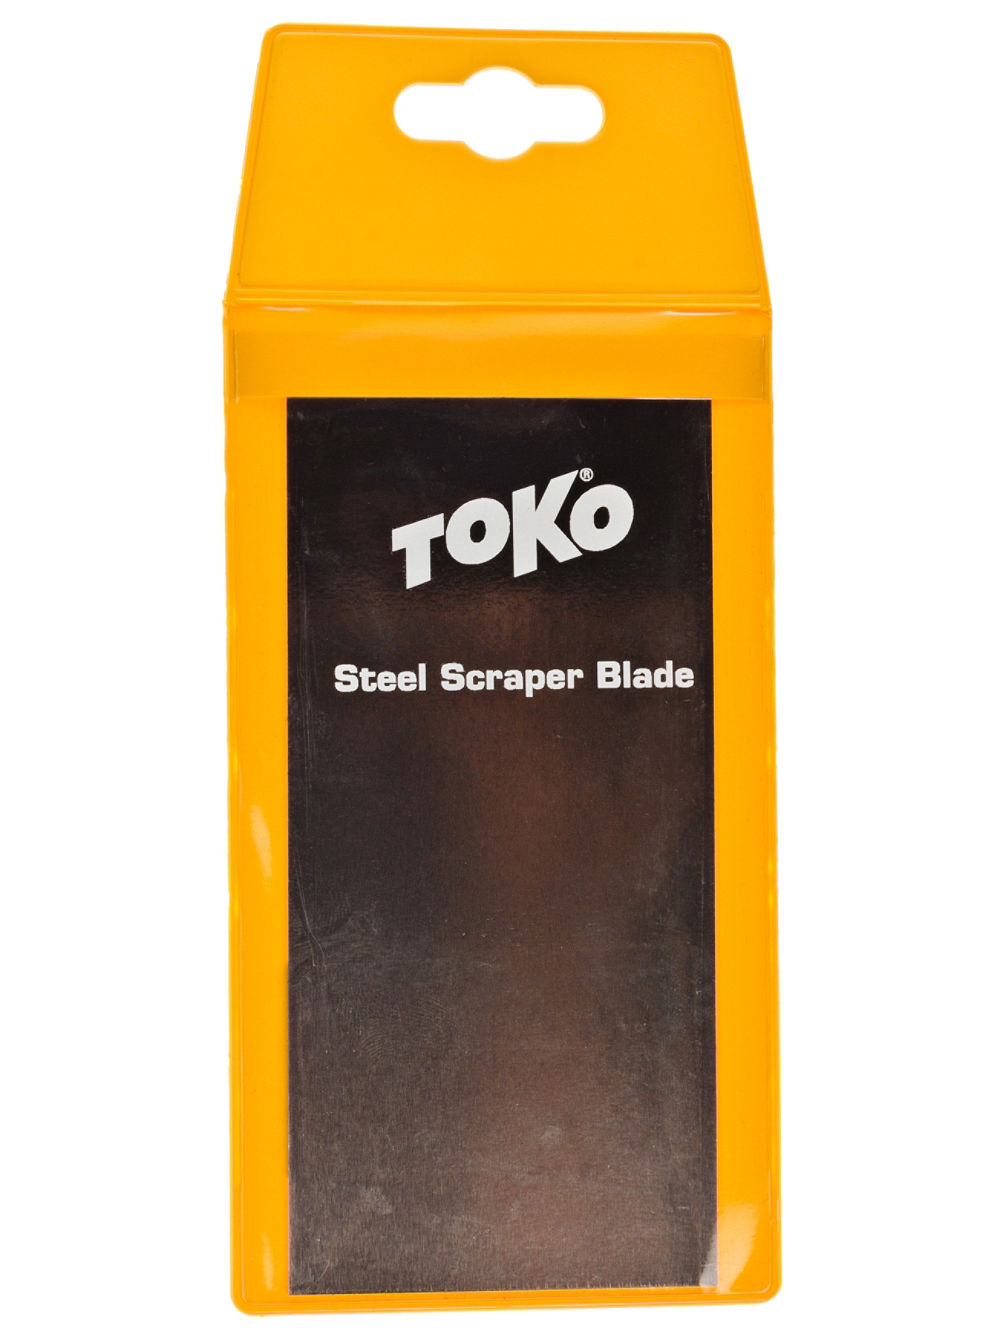 Steel Scraper Blade